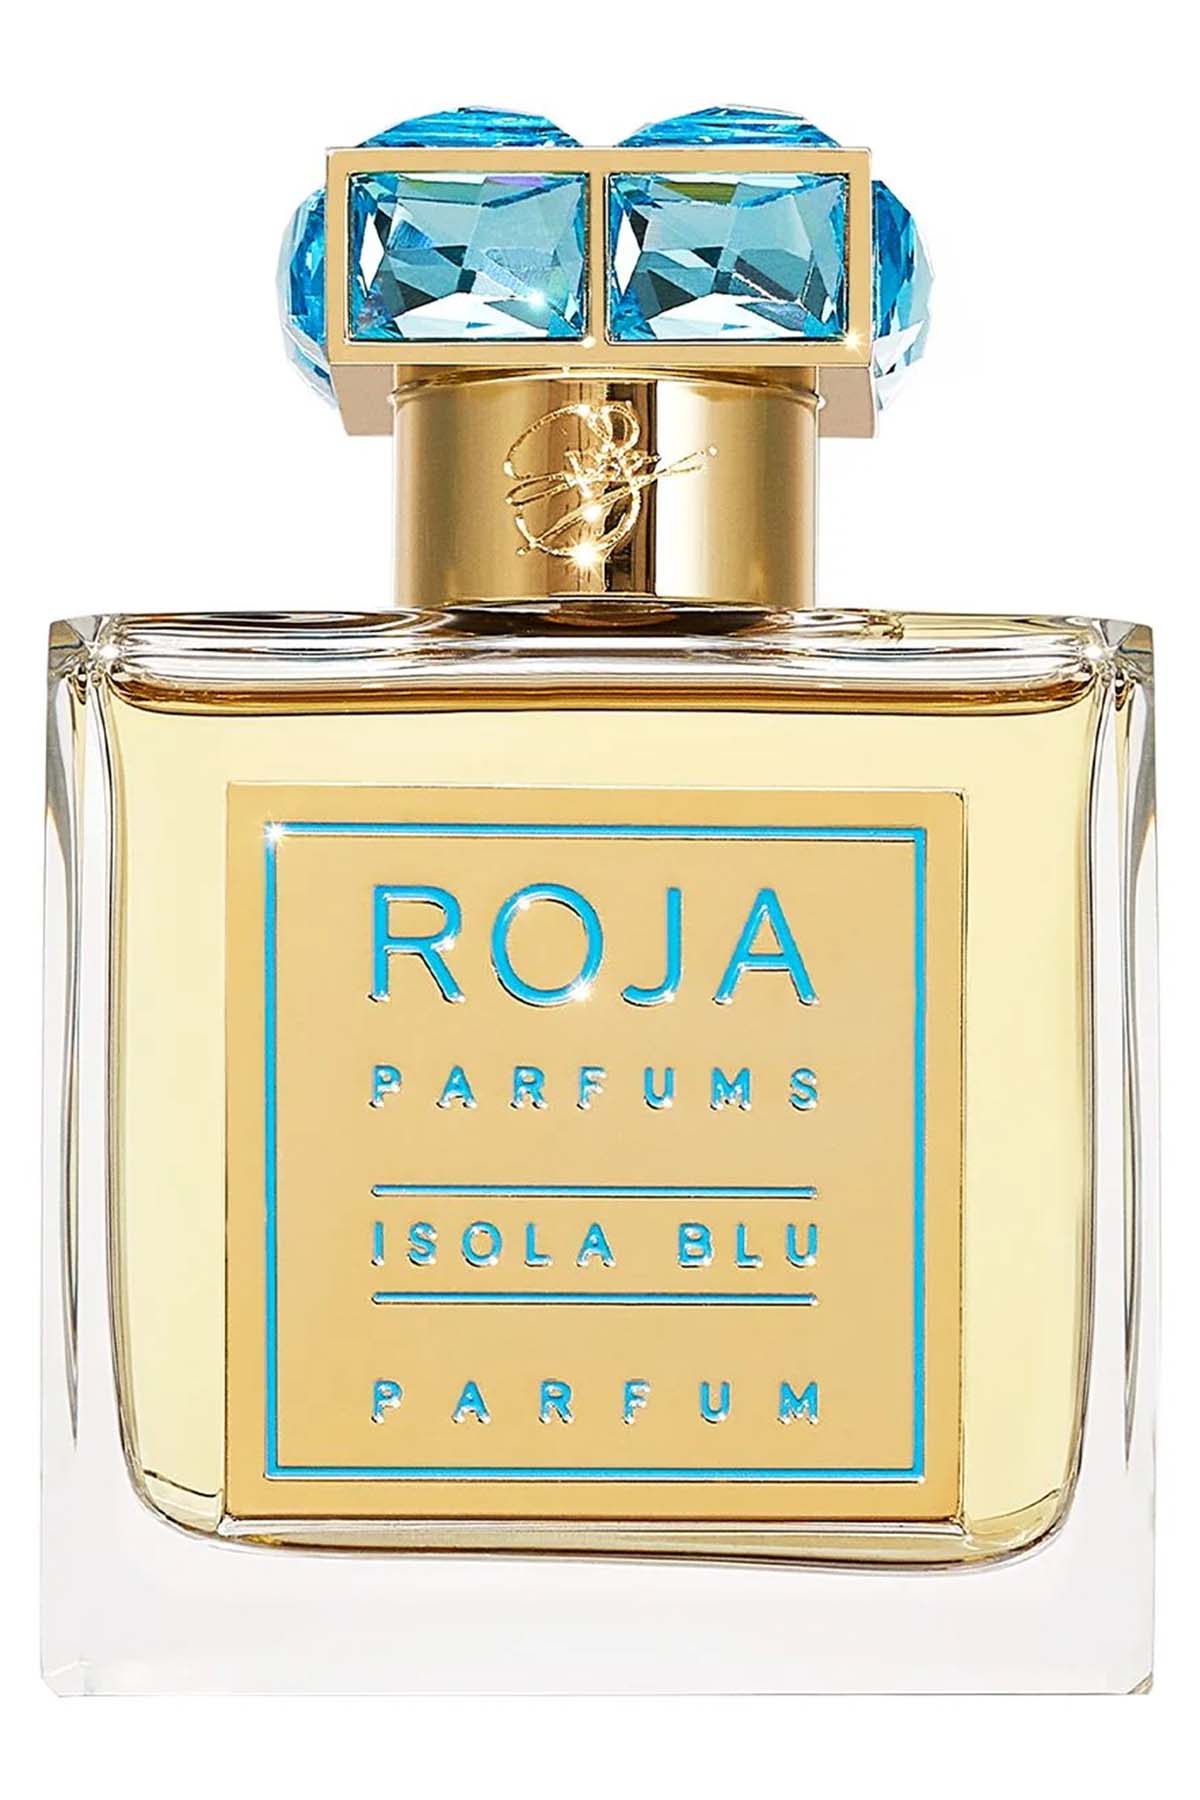 Roja Parfums Isola Blu Parfum